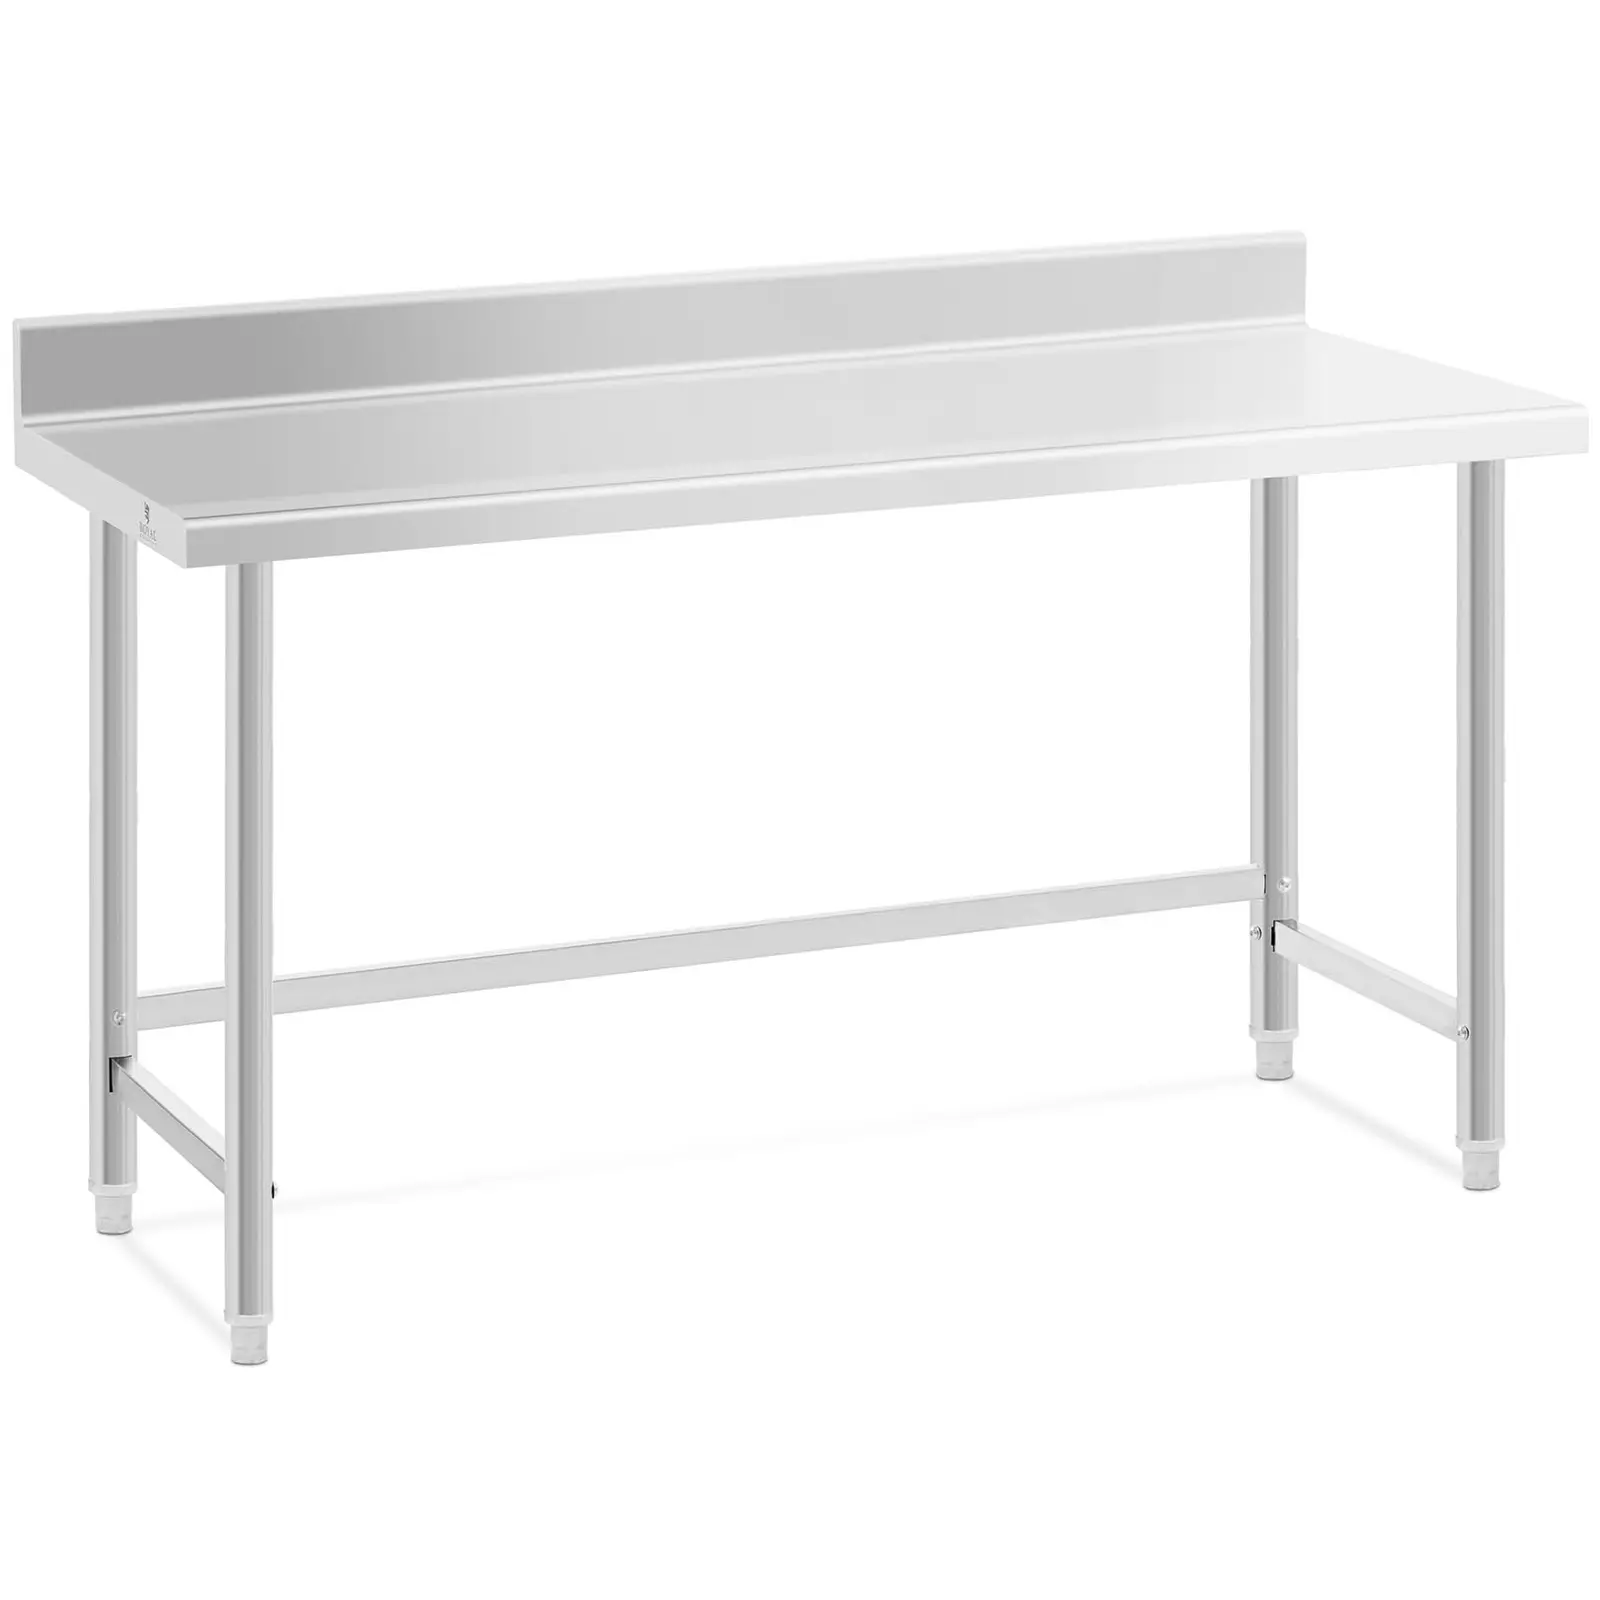 Pracovní stůl z ušlechtilé oceli 150 x 60 cm lem nosnost 90 kg - Pracovní stoly Royal Catering